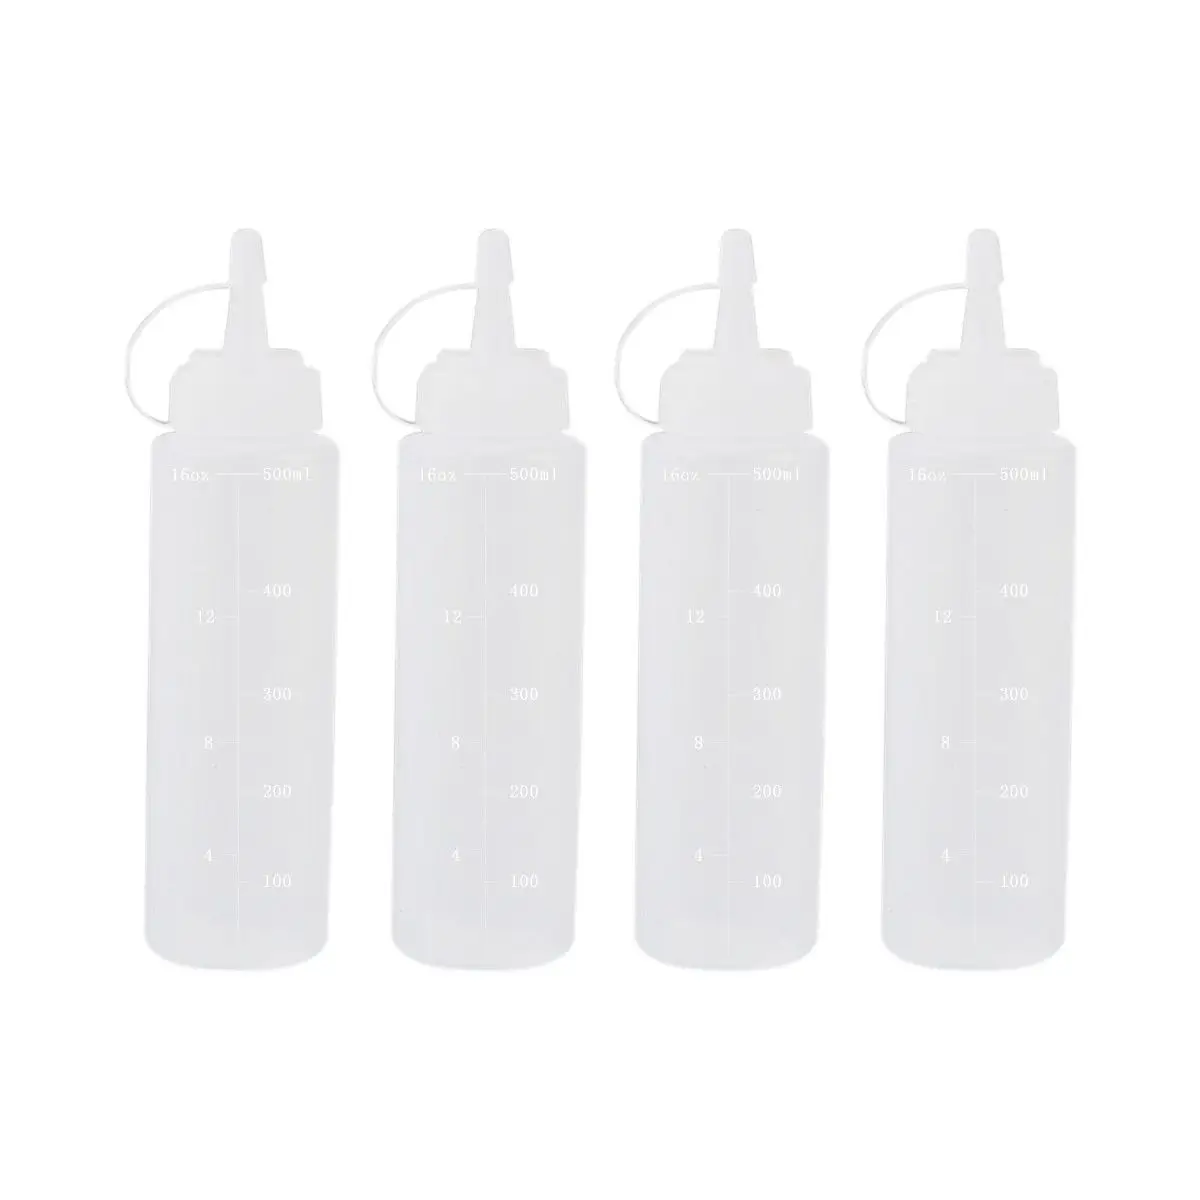 Мягкий пластмассовый флакон, натуральные прозрачные пластиковые бутылки с крышкой, измерение для повязки, масла, барбекю, кухни, жидкостей и искусства - Цвет: White